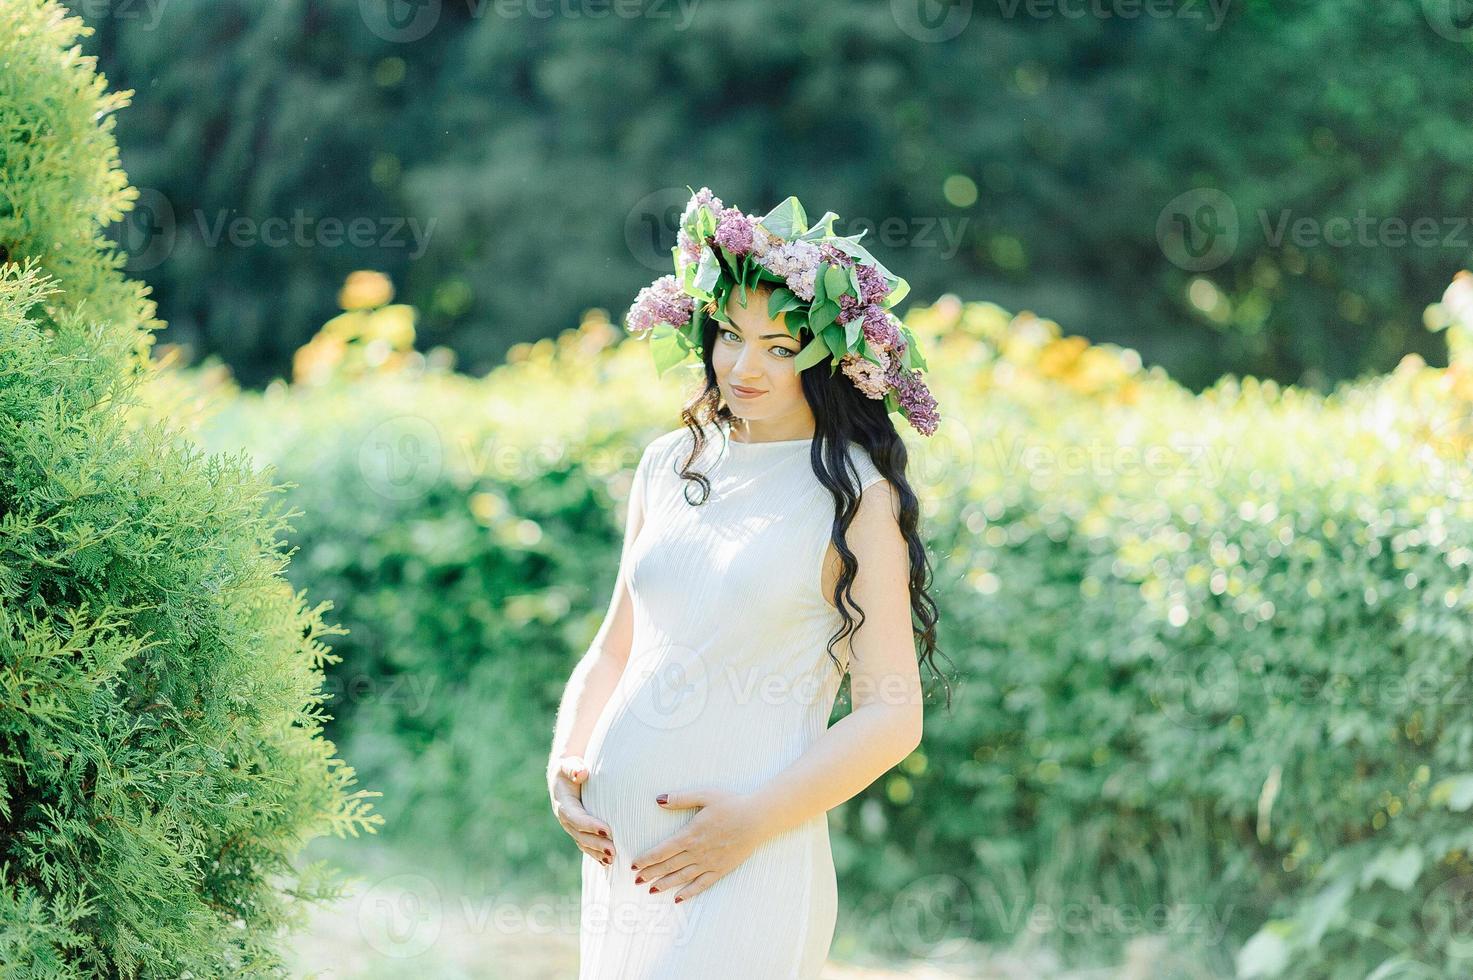 jeune femme enceinte au printemps jardin fleuri lilas. look romantique avec chapeau de paille. femme caucasienne aux longs cheveux bruns. concept de nouvelle vie de la nature et de l'homme. attente de bébé photo